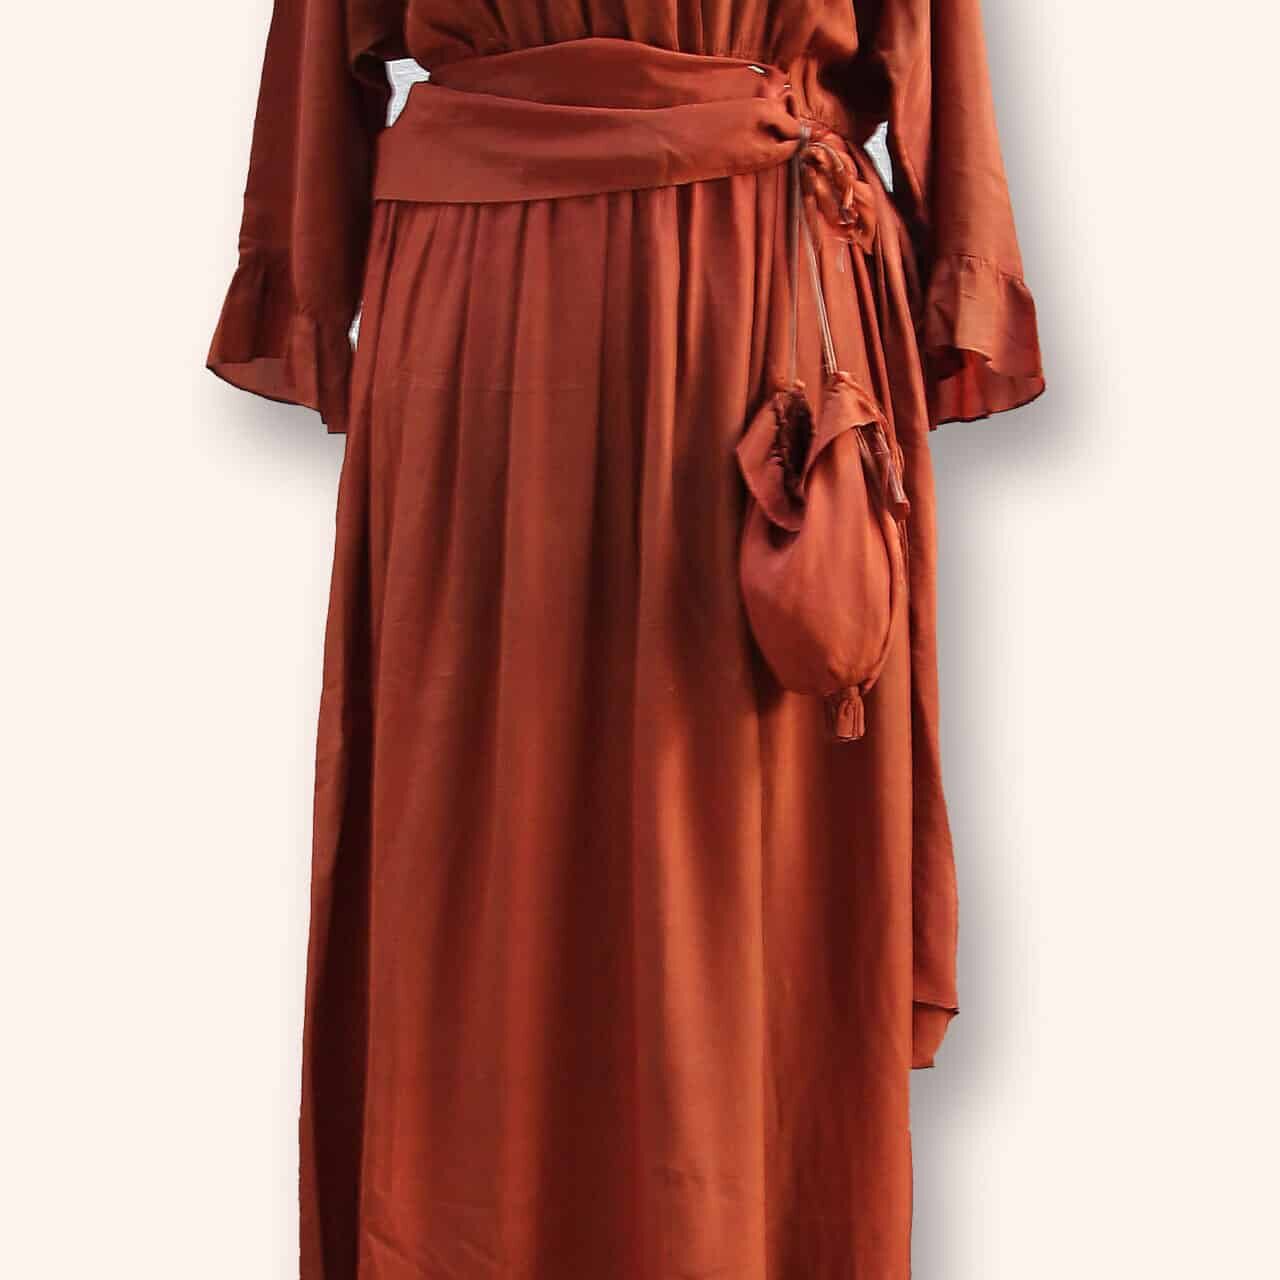 terrracotta trouwjurk tentoongesteld in de expositie 'Van onder tot boven' over dameskleding in de periode 1880 tot heden van Museum De Schilpen